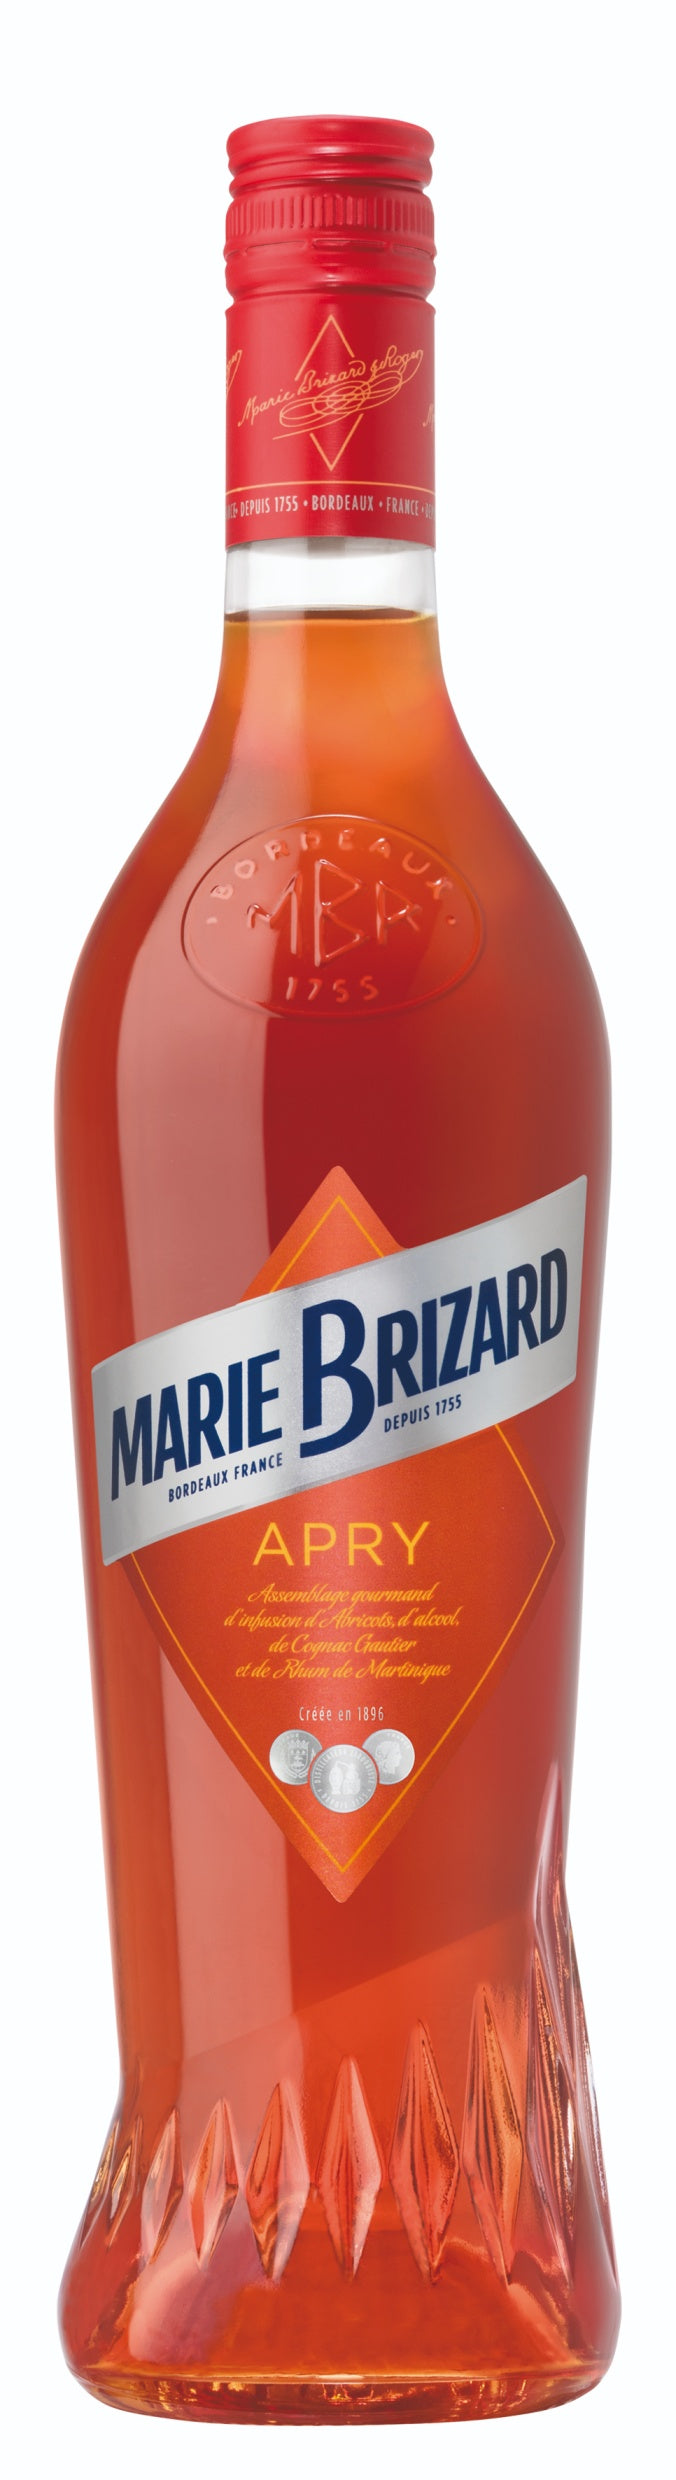 MARIE BRIZARD LIQUEUR APRICOT BRANDY 70CL